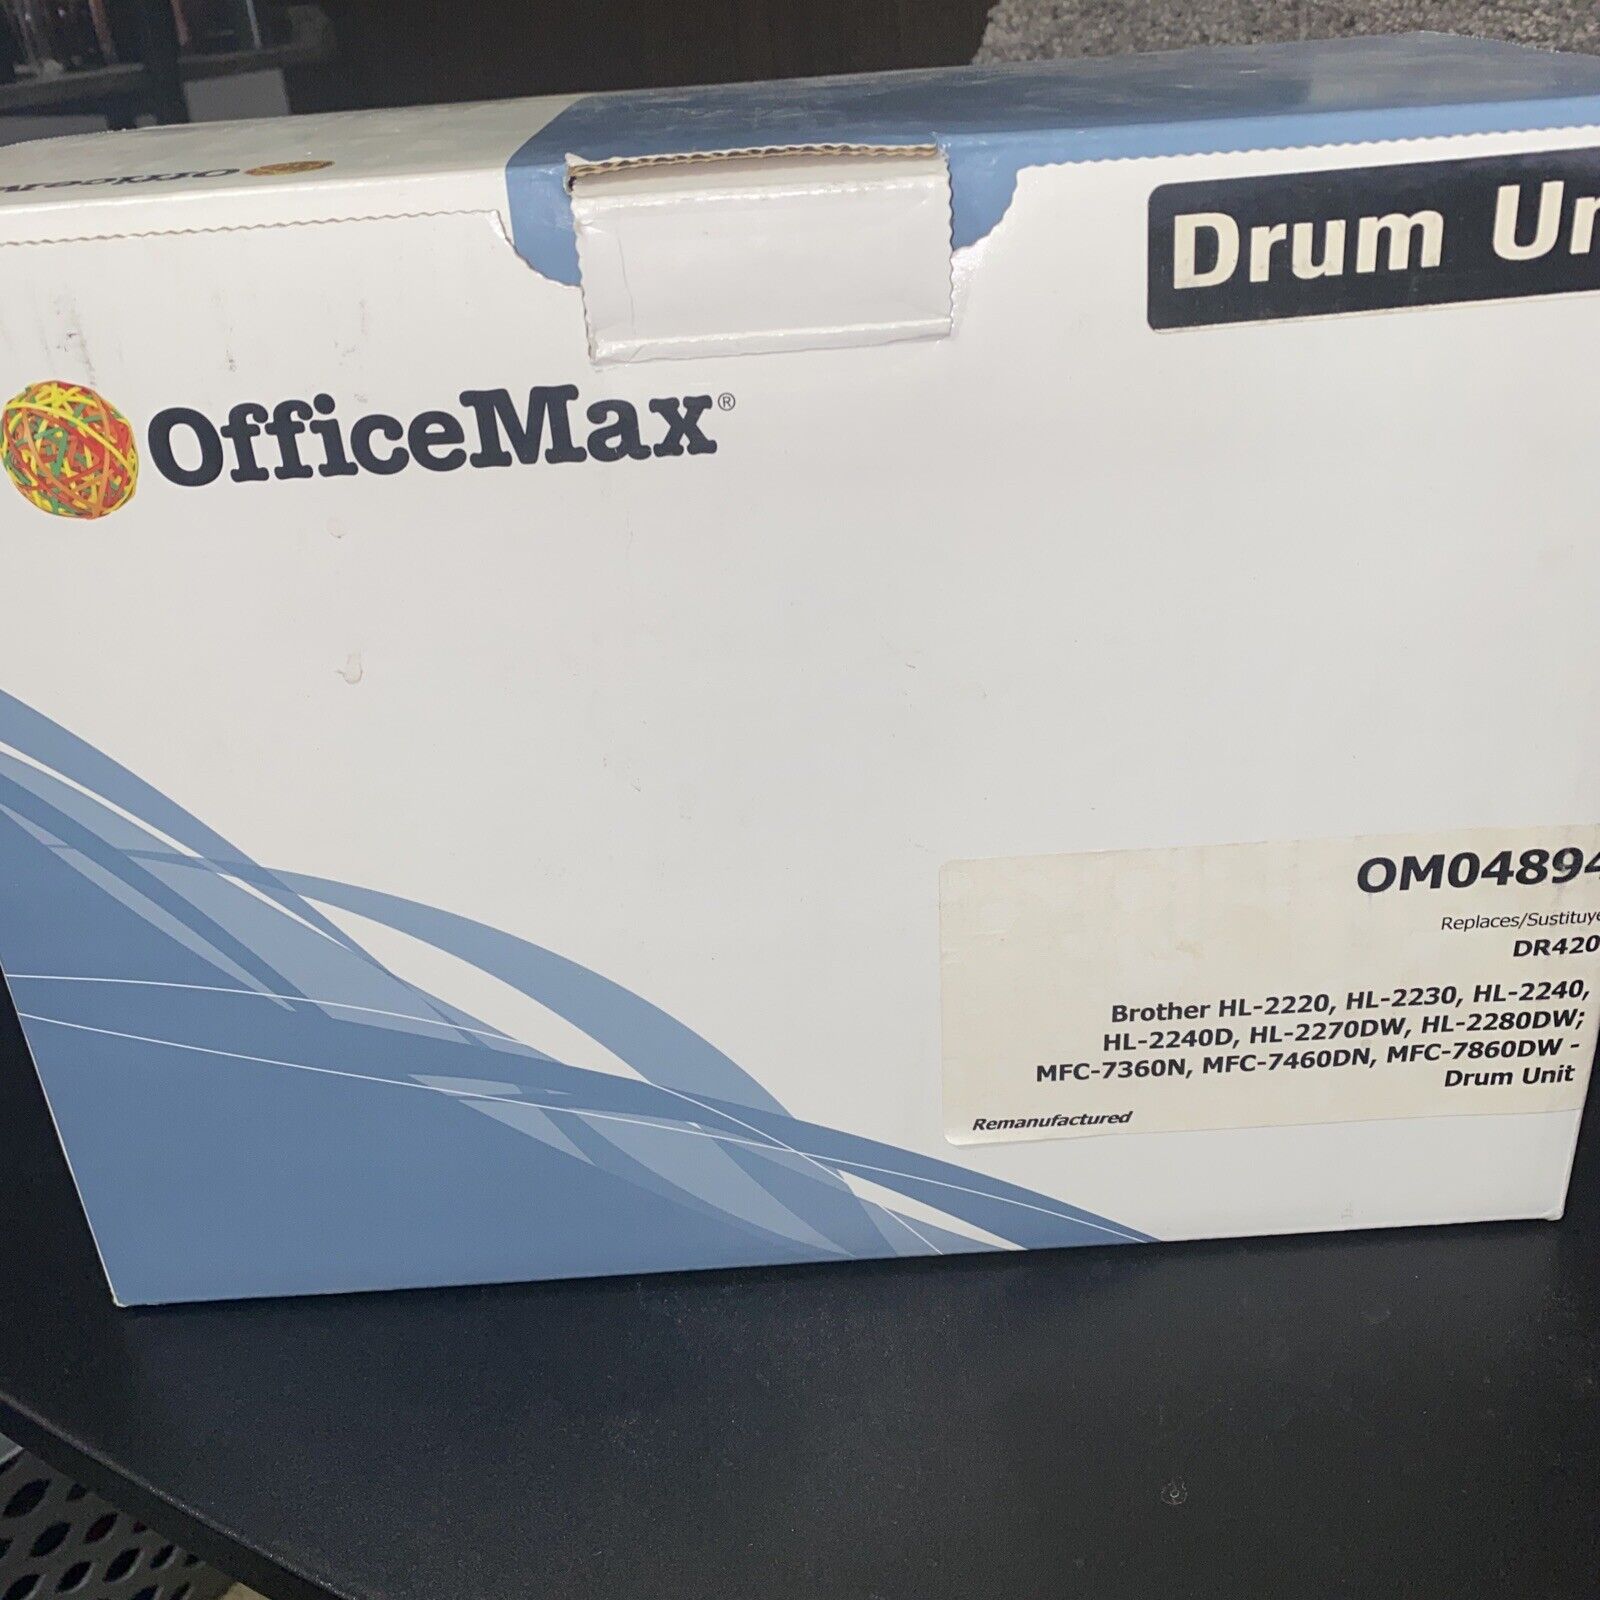 Office Max premium drum unit DR420